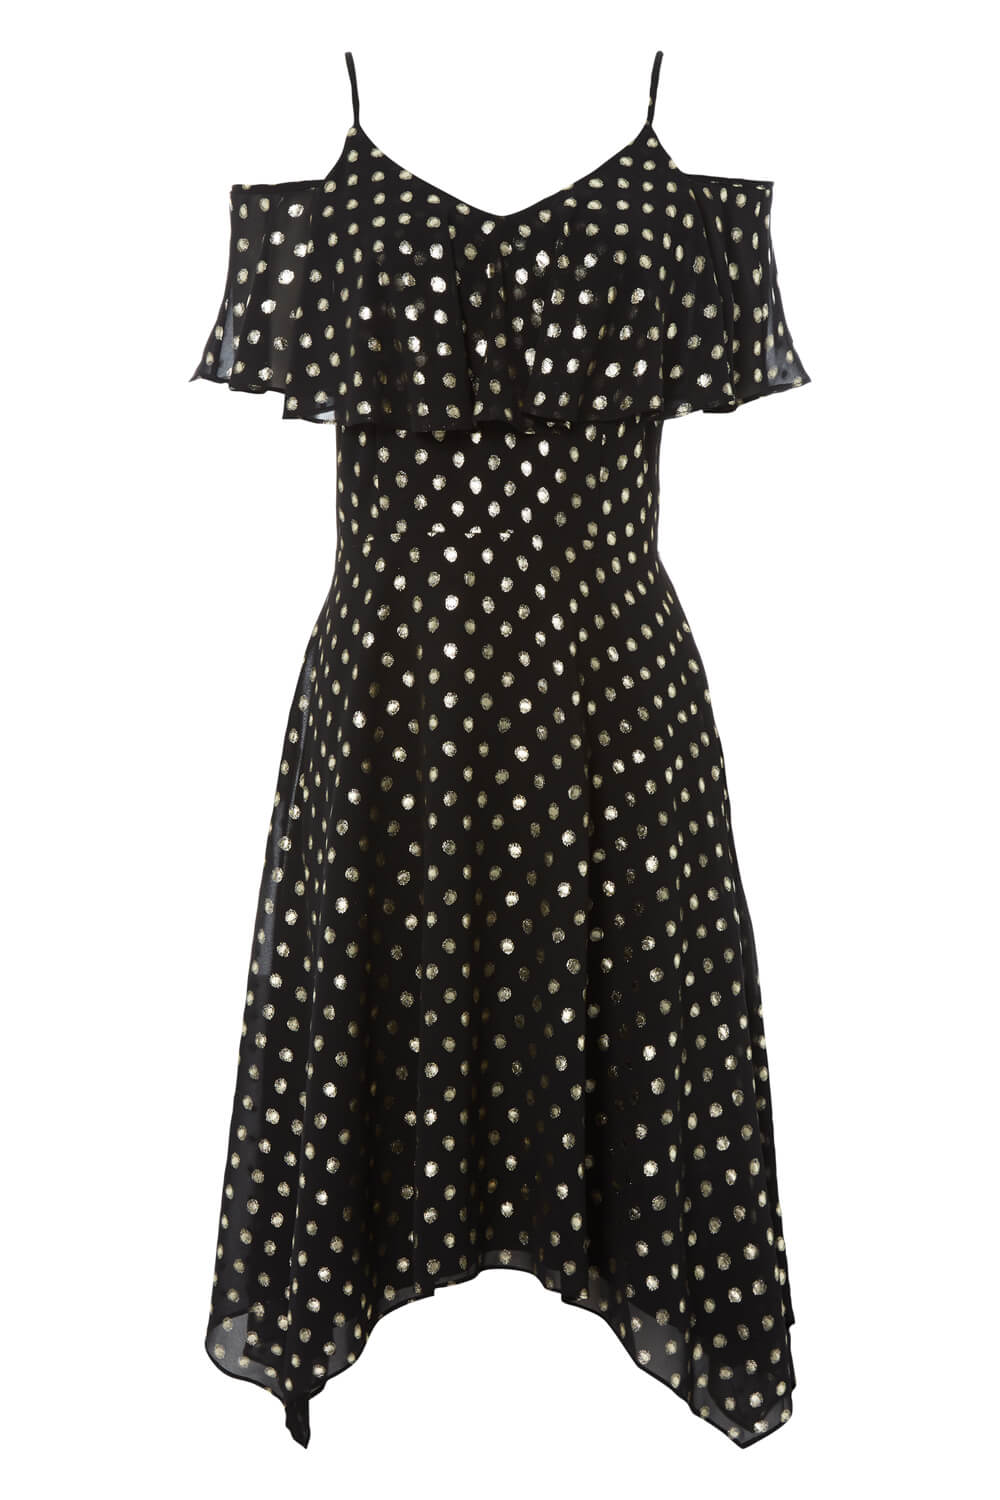 Black Polka Dot Hanky Hem Dress, Image 5 of 5